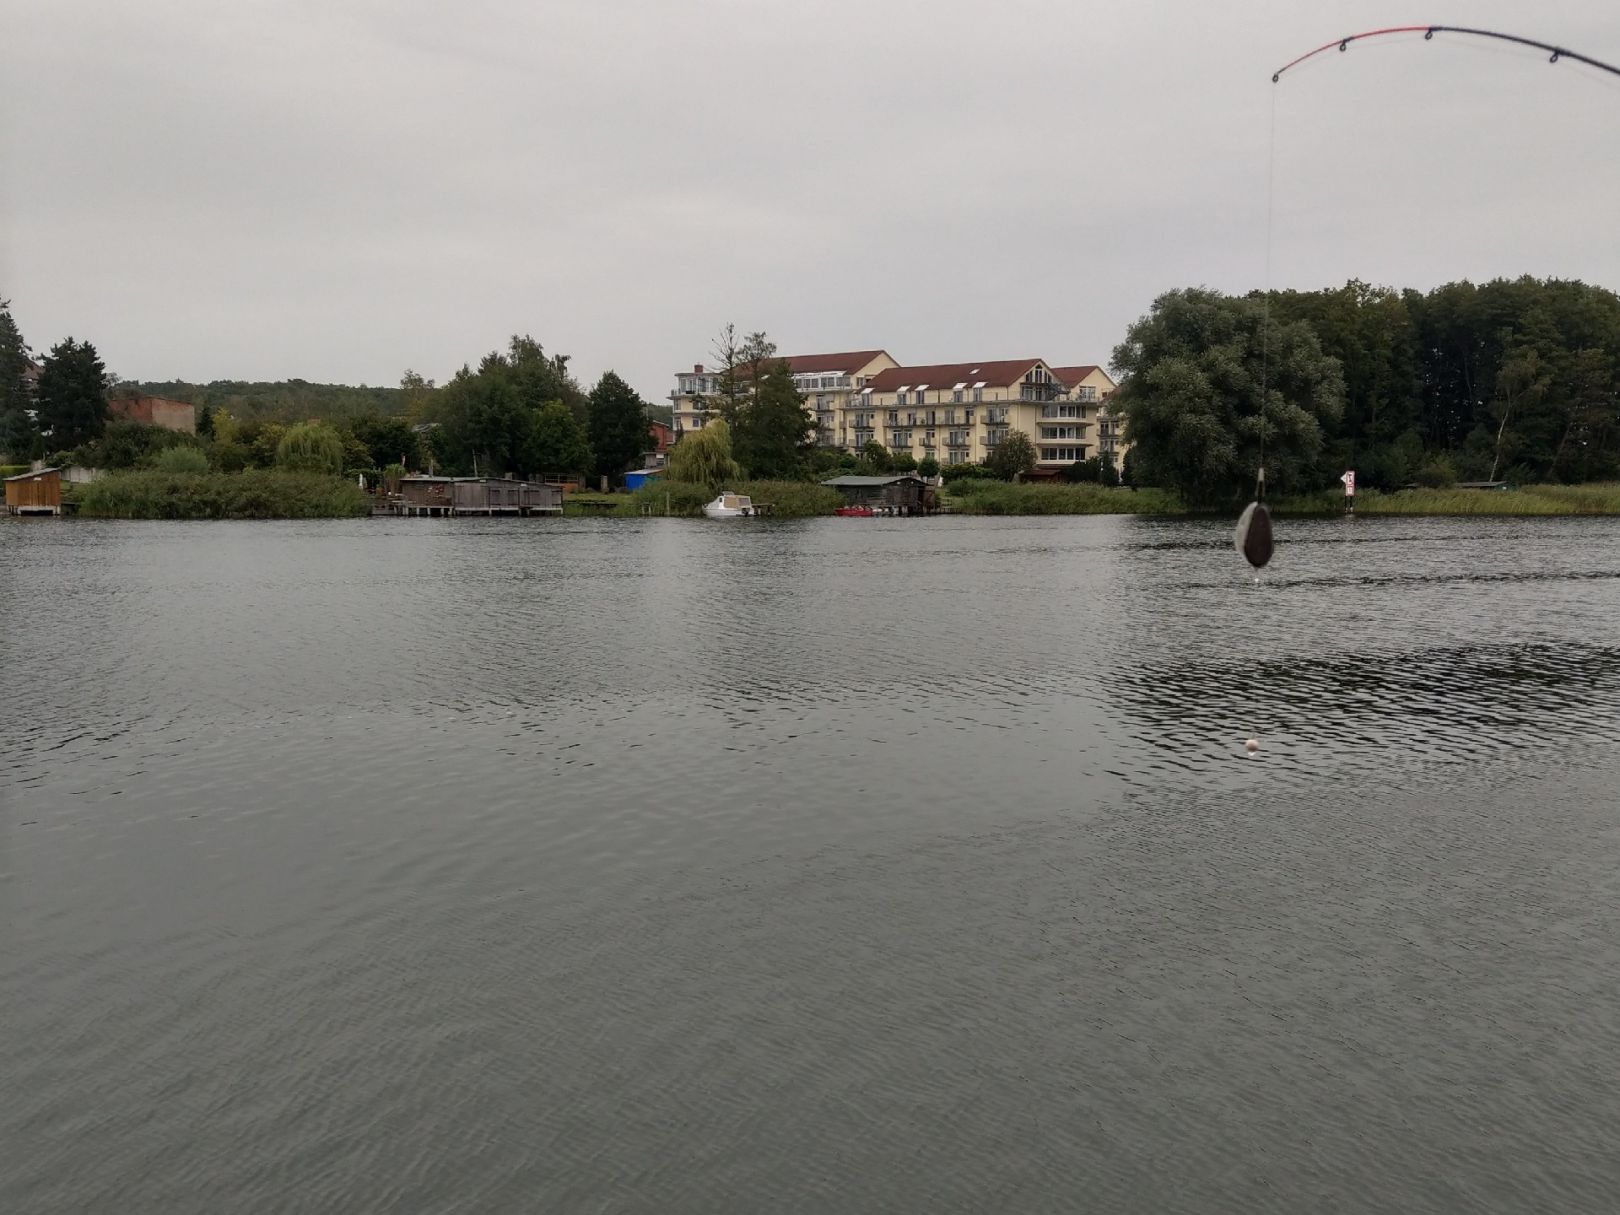 Malchower Stadtsee angeln